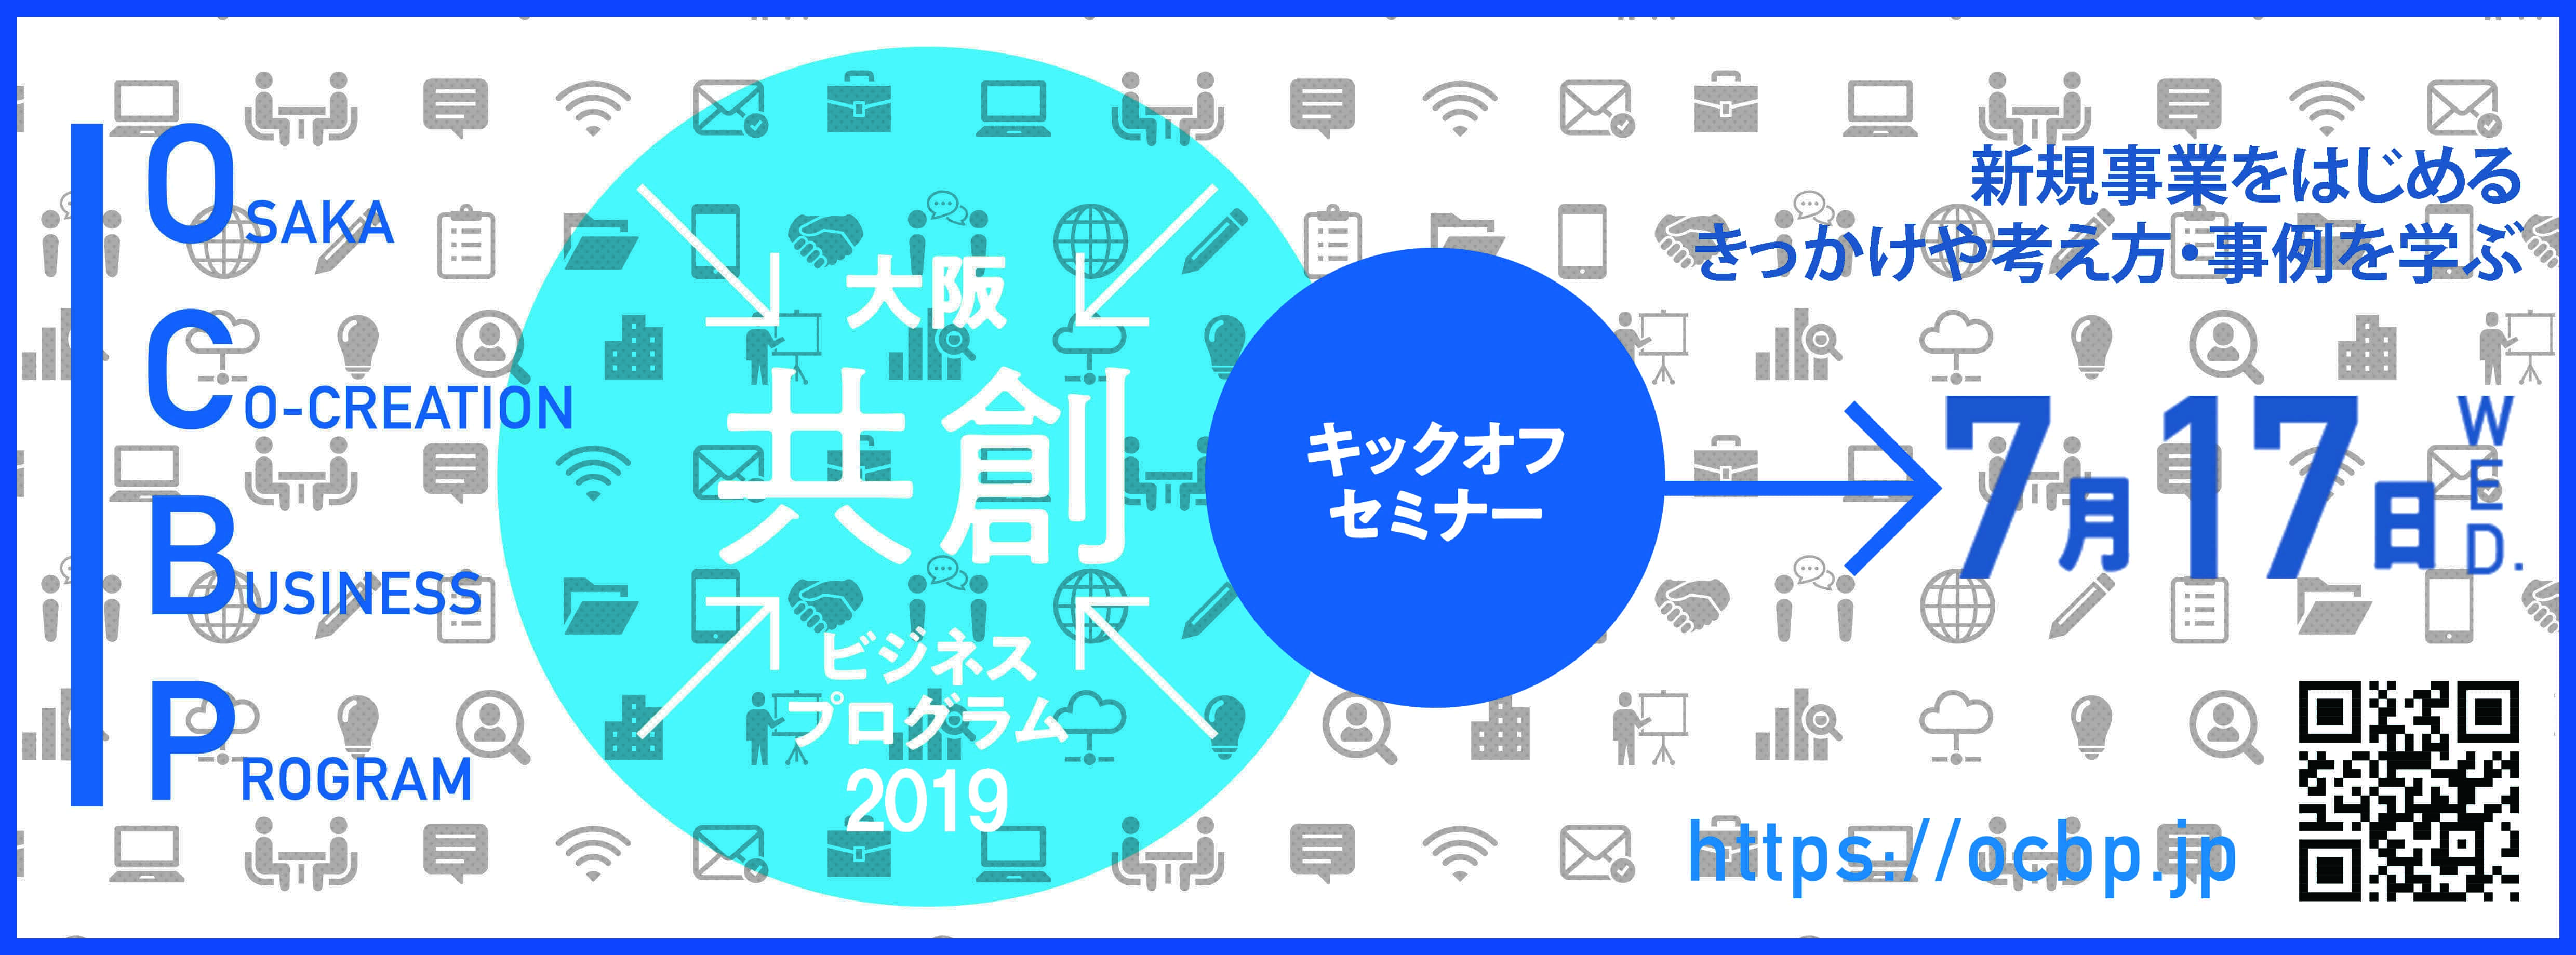 共創型 ”で中小企業の新事業創出を支援する「大阪共創ビジネス 